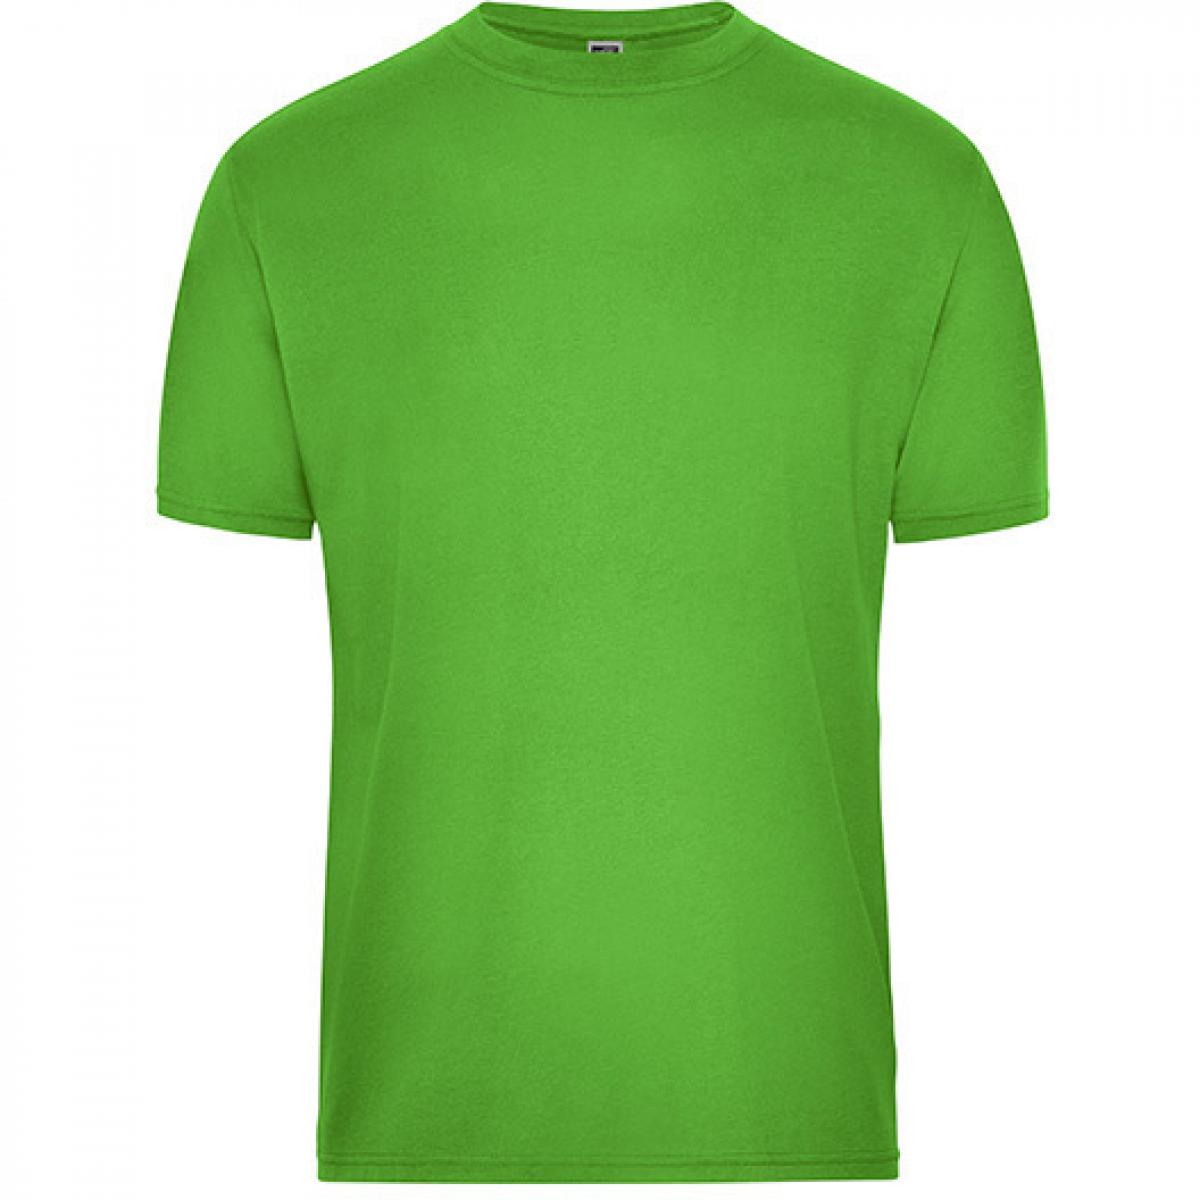 Hersteller: James+Nicholson Herstellernummer: JN1808 Artikelbezeichnung: Men‘s BIO Workwear T-Shirt, Waschbar bis 60 °C Farbe: Lime Green